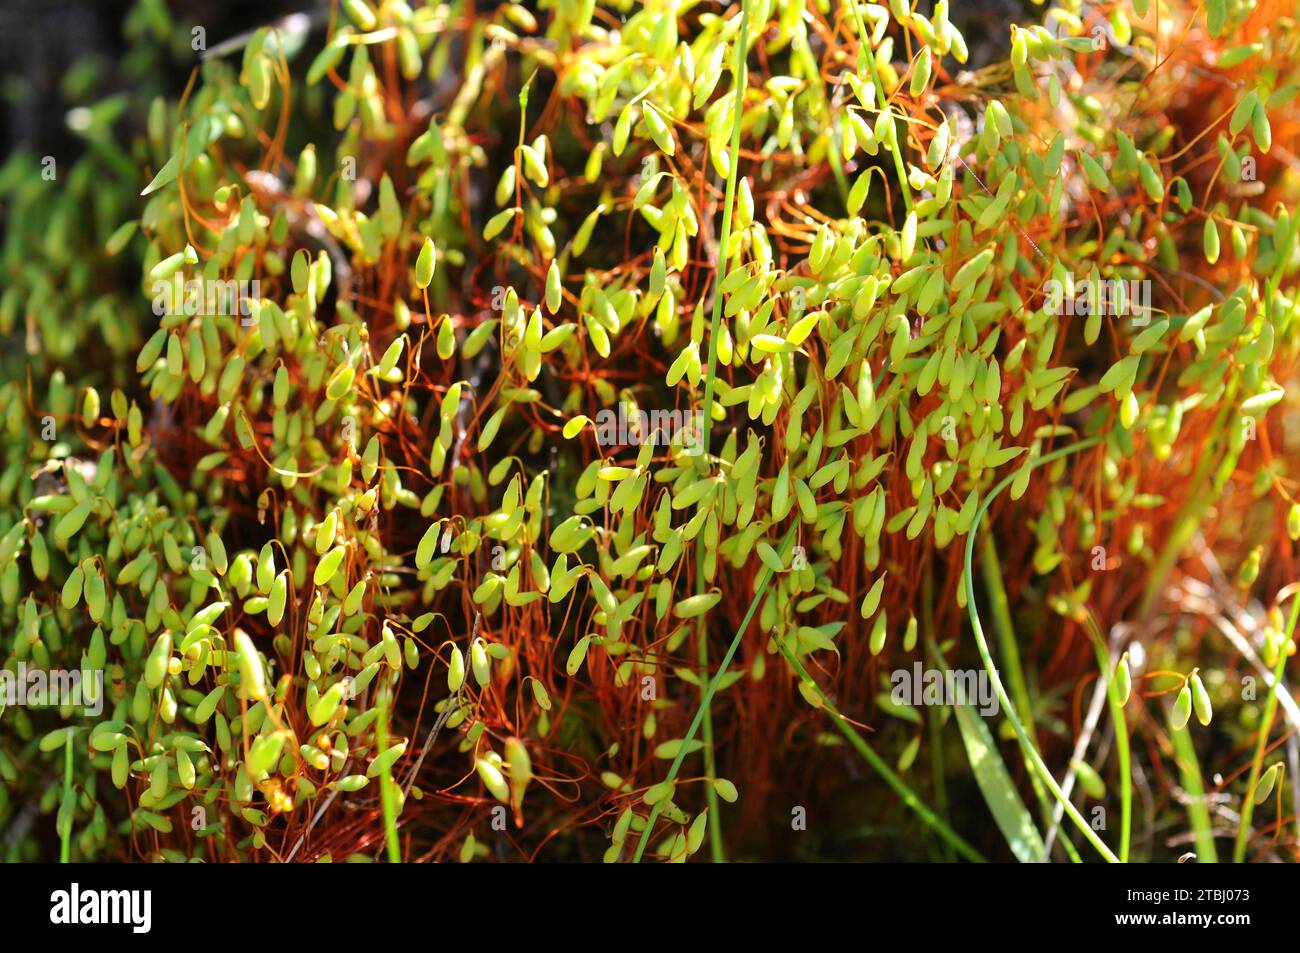 Pohlia moss (Pohlia nutans). Capsules detail. Stock Photo